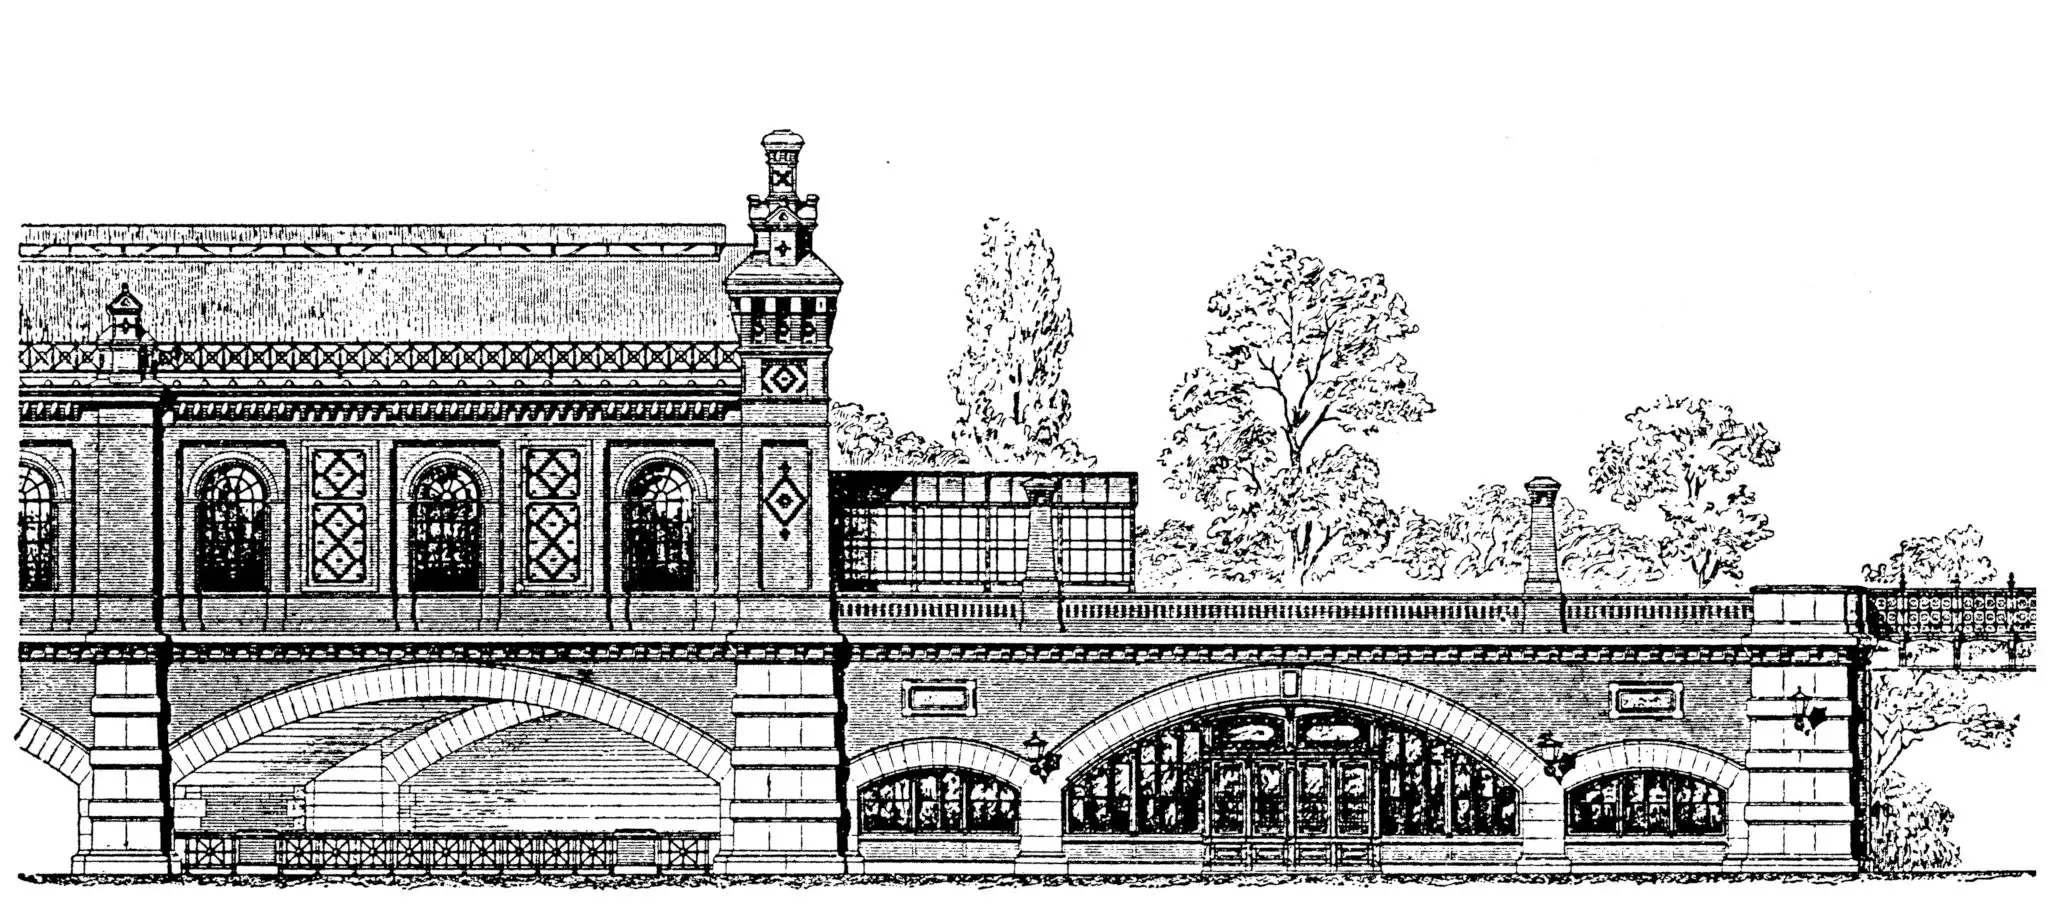  Bahnhof Tiergarten in Berlin, 1896